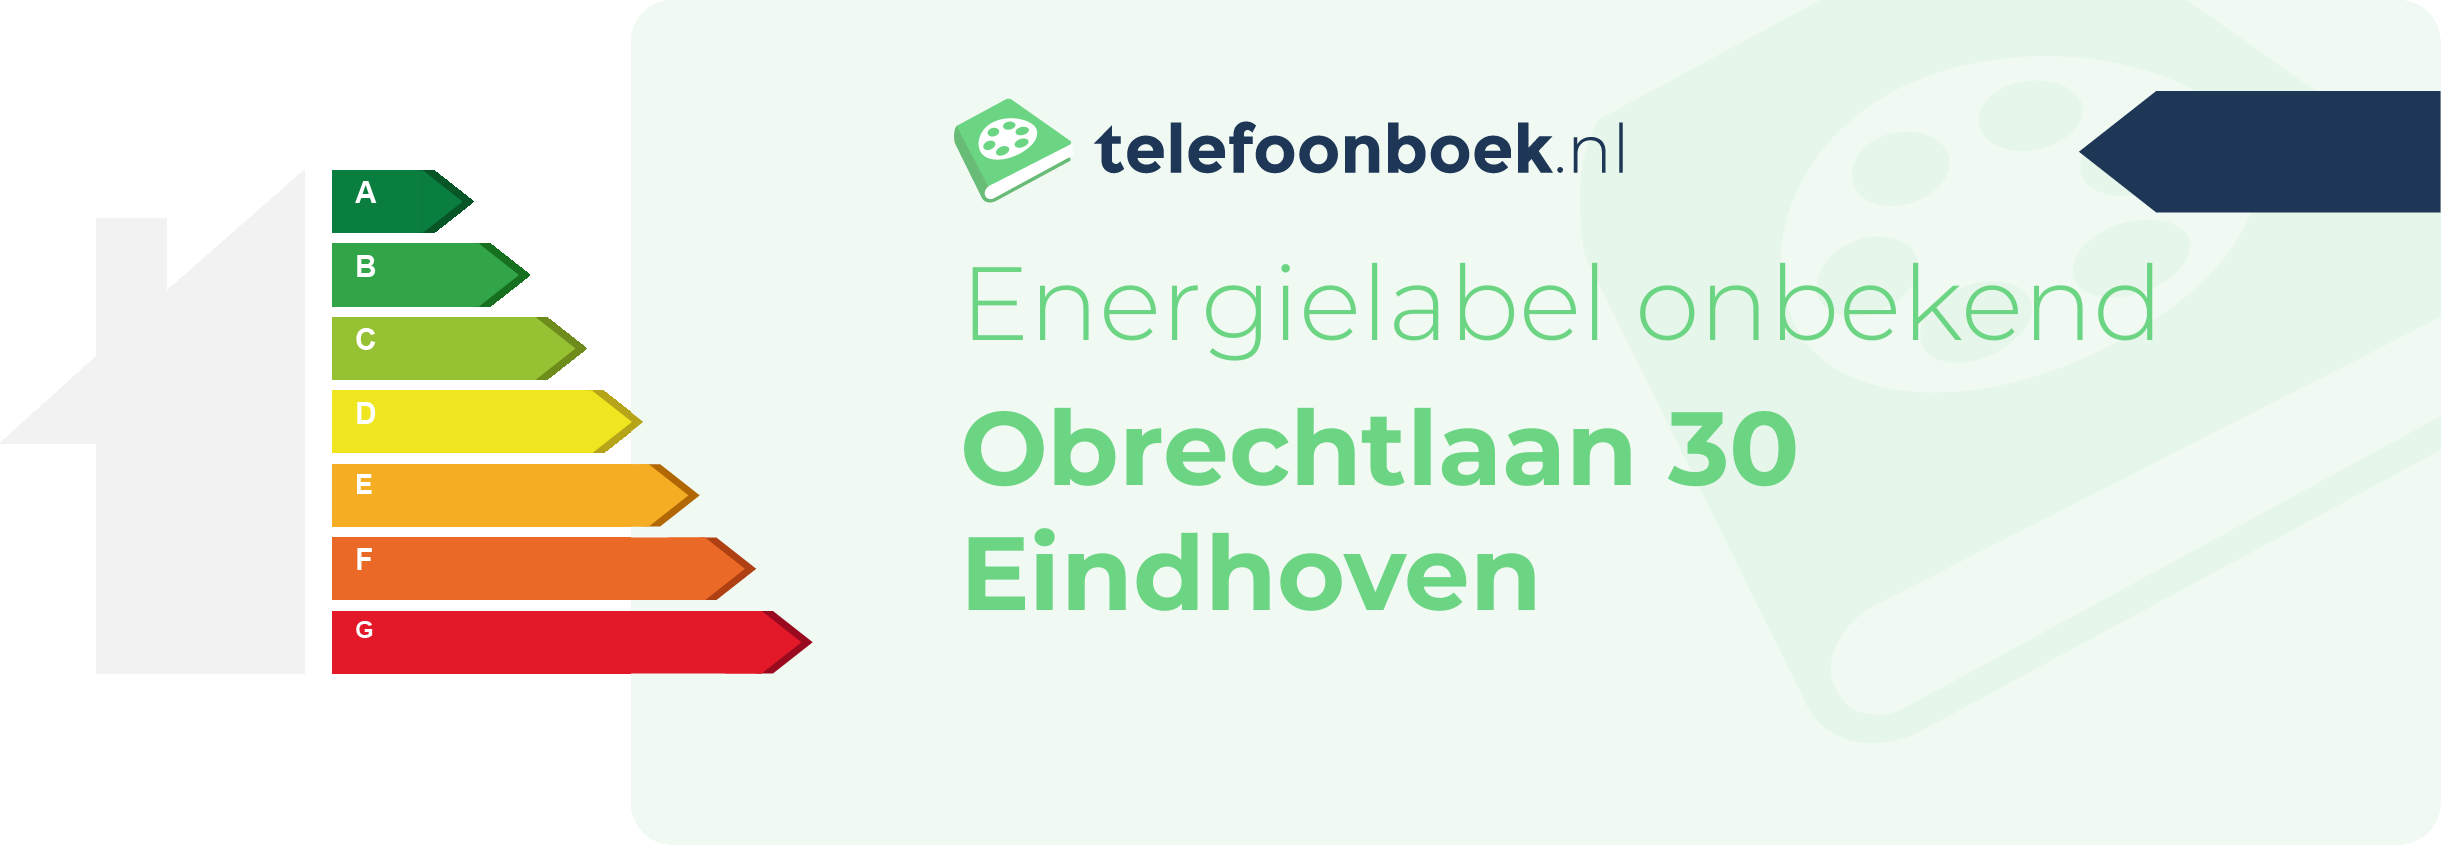 Energielabel Obrechtlaan 30 Eindhoven